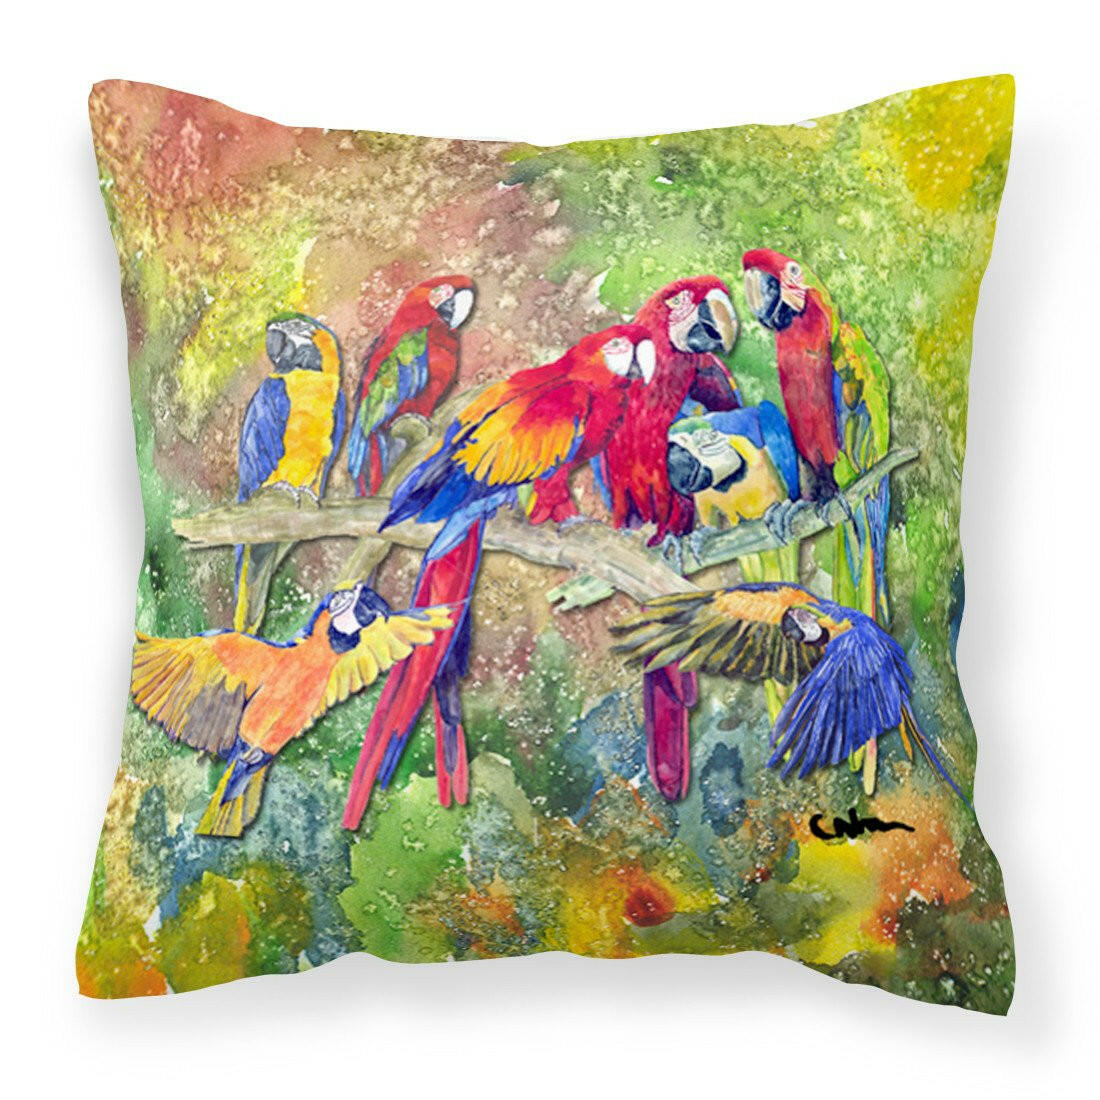 Parrots Galore Fabric Decorative Pillow 8600-2PW1414 - the-store.com